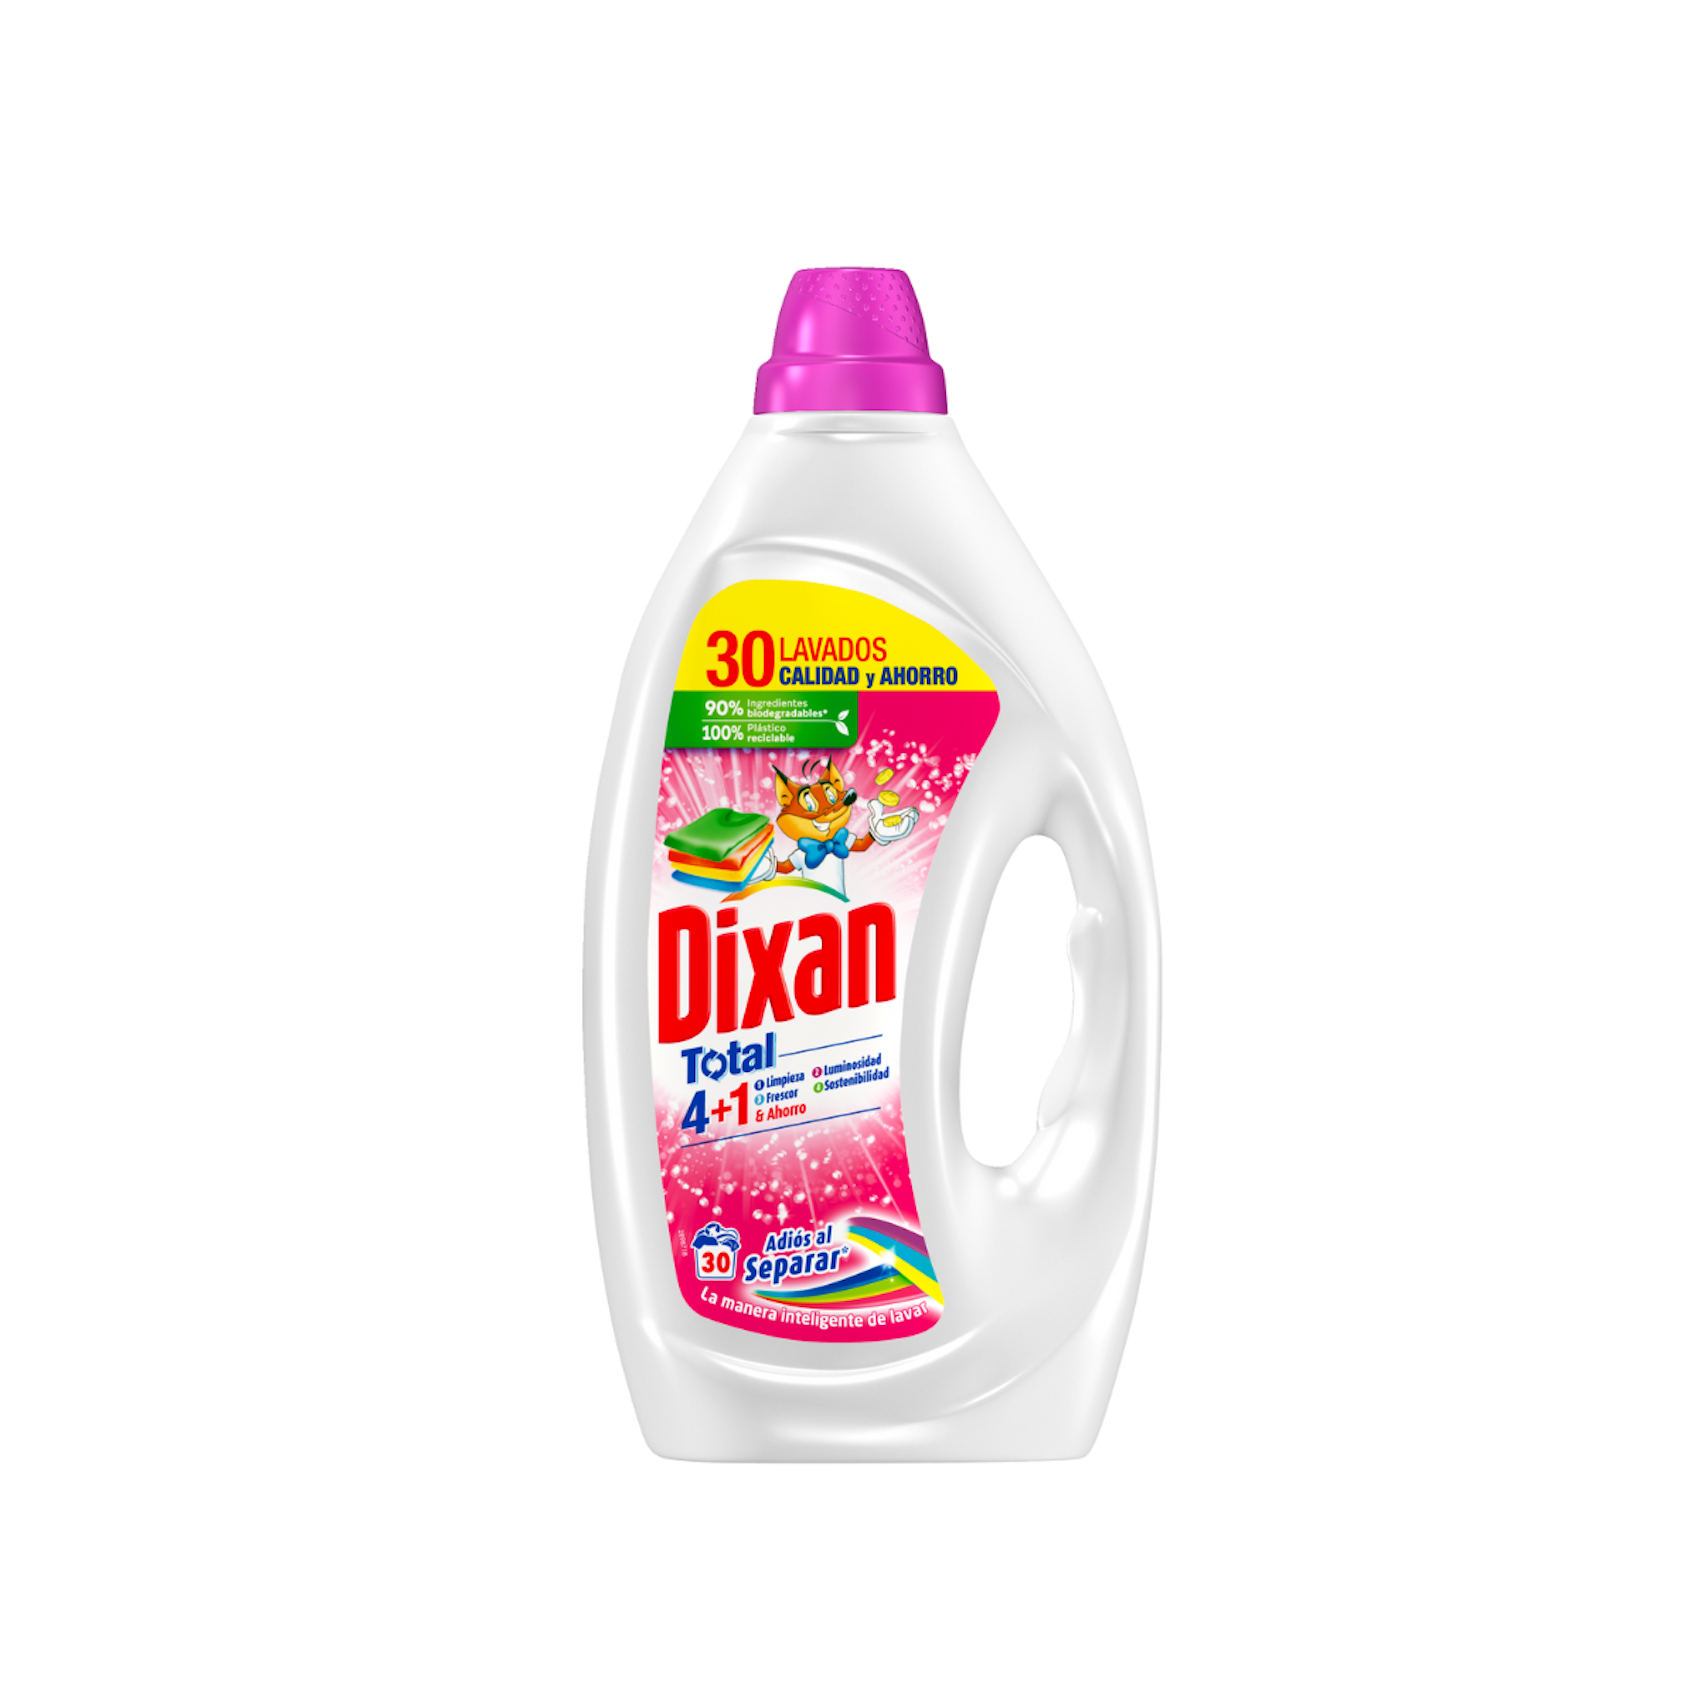 Detergente Liquido Adios Dixan 30Lav